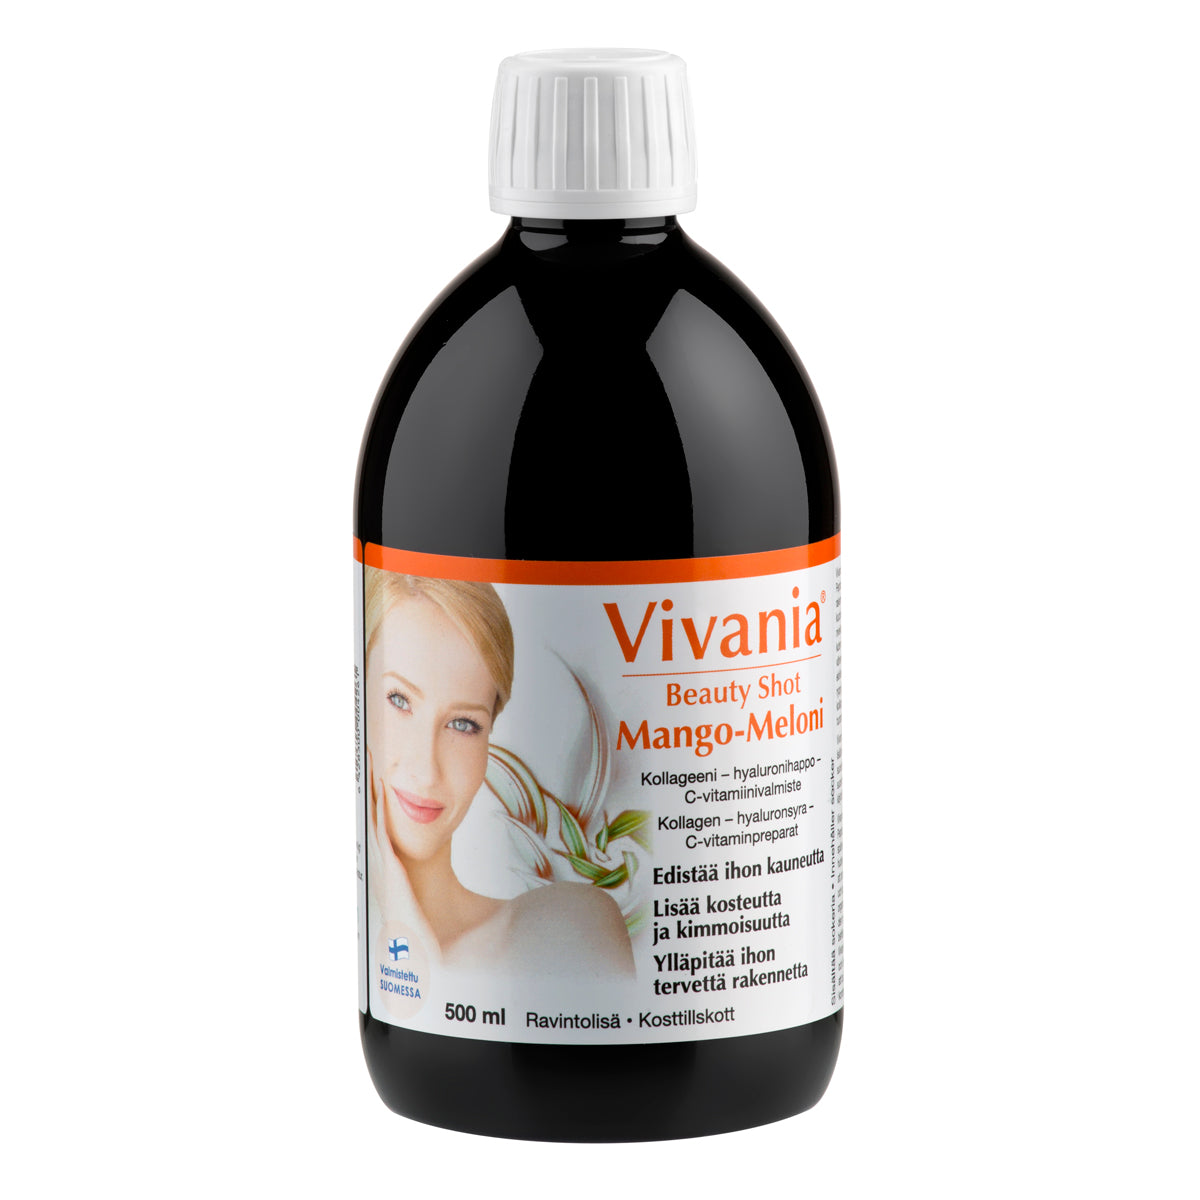 Vivania Beauty Shot Mango-Meloni 500 ml. Tehokas, hyvin imeytyvää 1. tyypin hydrolysoitua Peptan kollageenia, hyaluronihappoa ja C-vitamiinia, jotka vahvistavat ihon rakennetta. Tasoittaa juonteita, lisää ihon kosteutta ja kimmoisuutta ja palauttaa ihon kiinteyden.